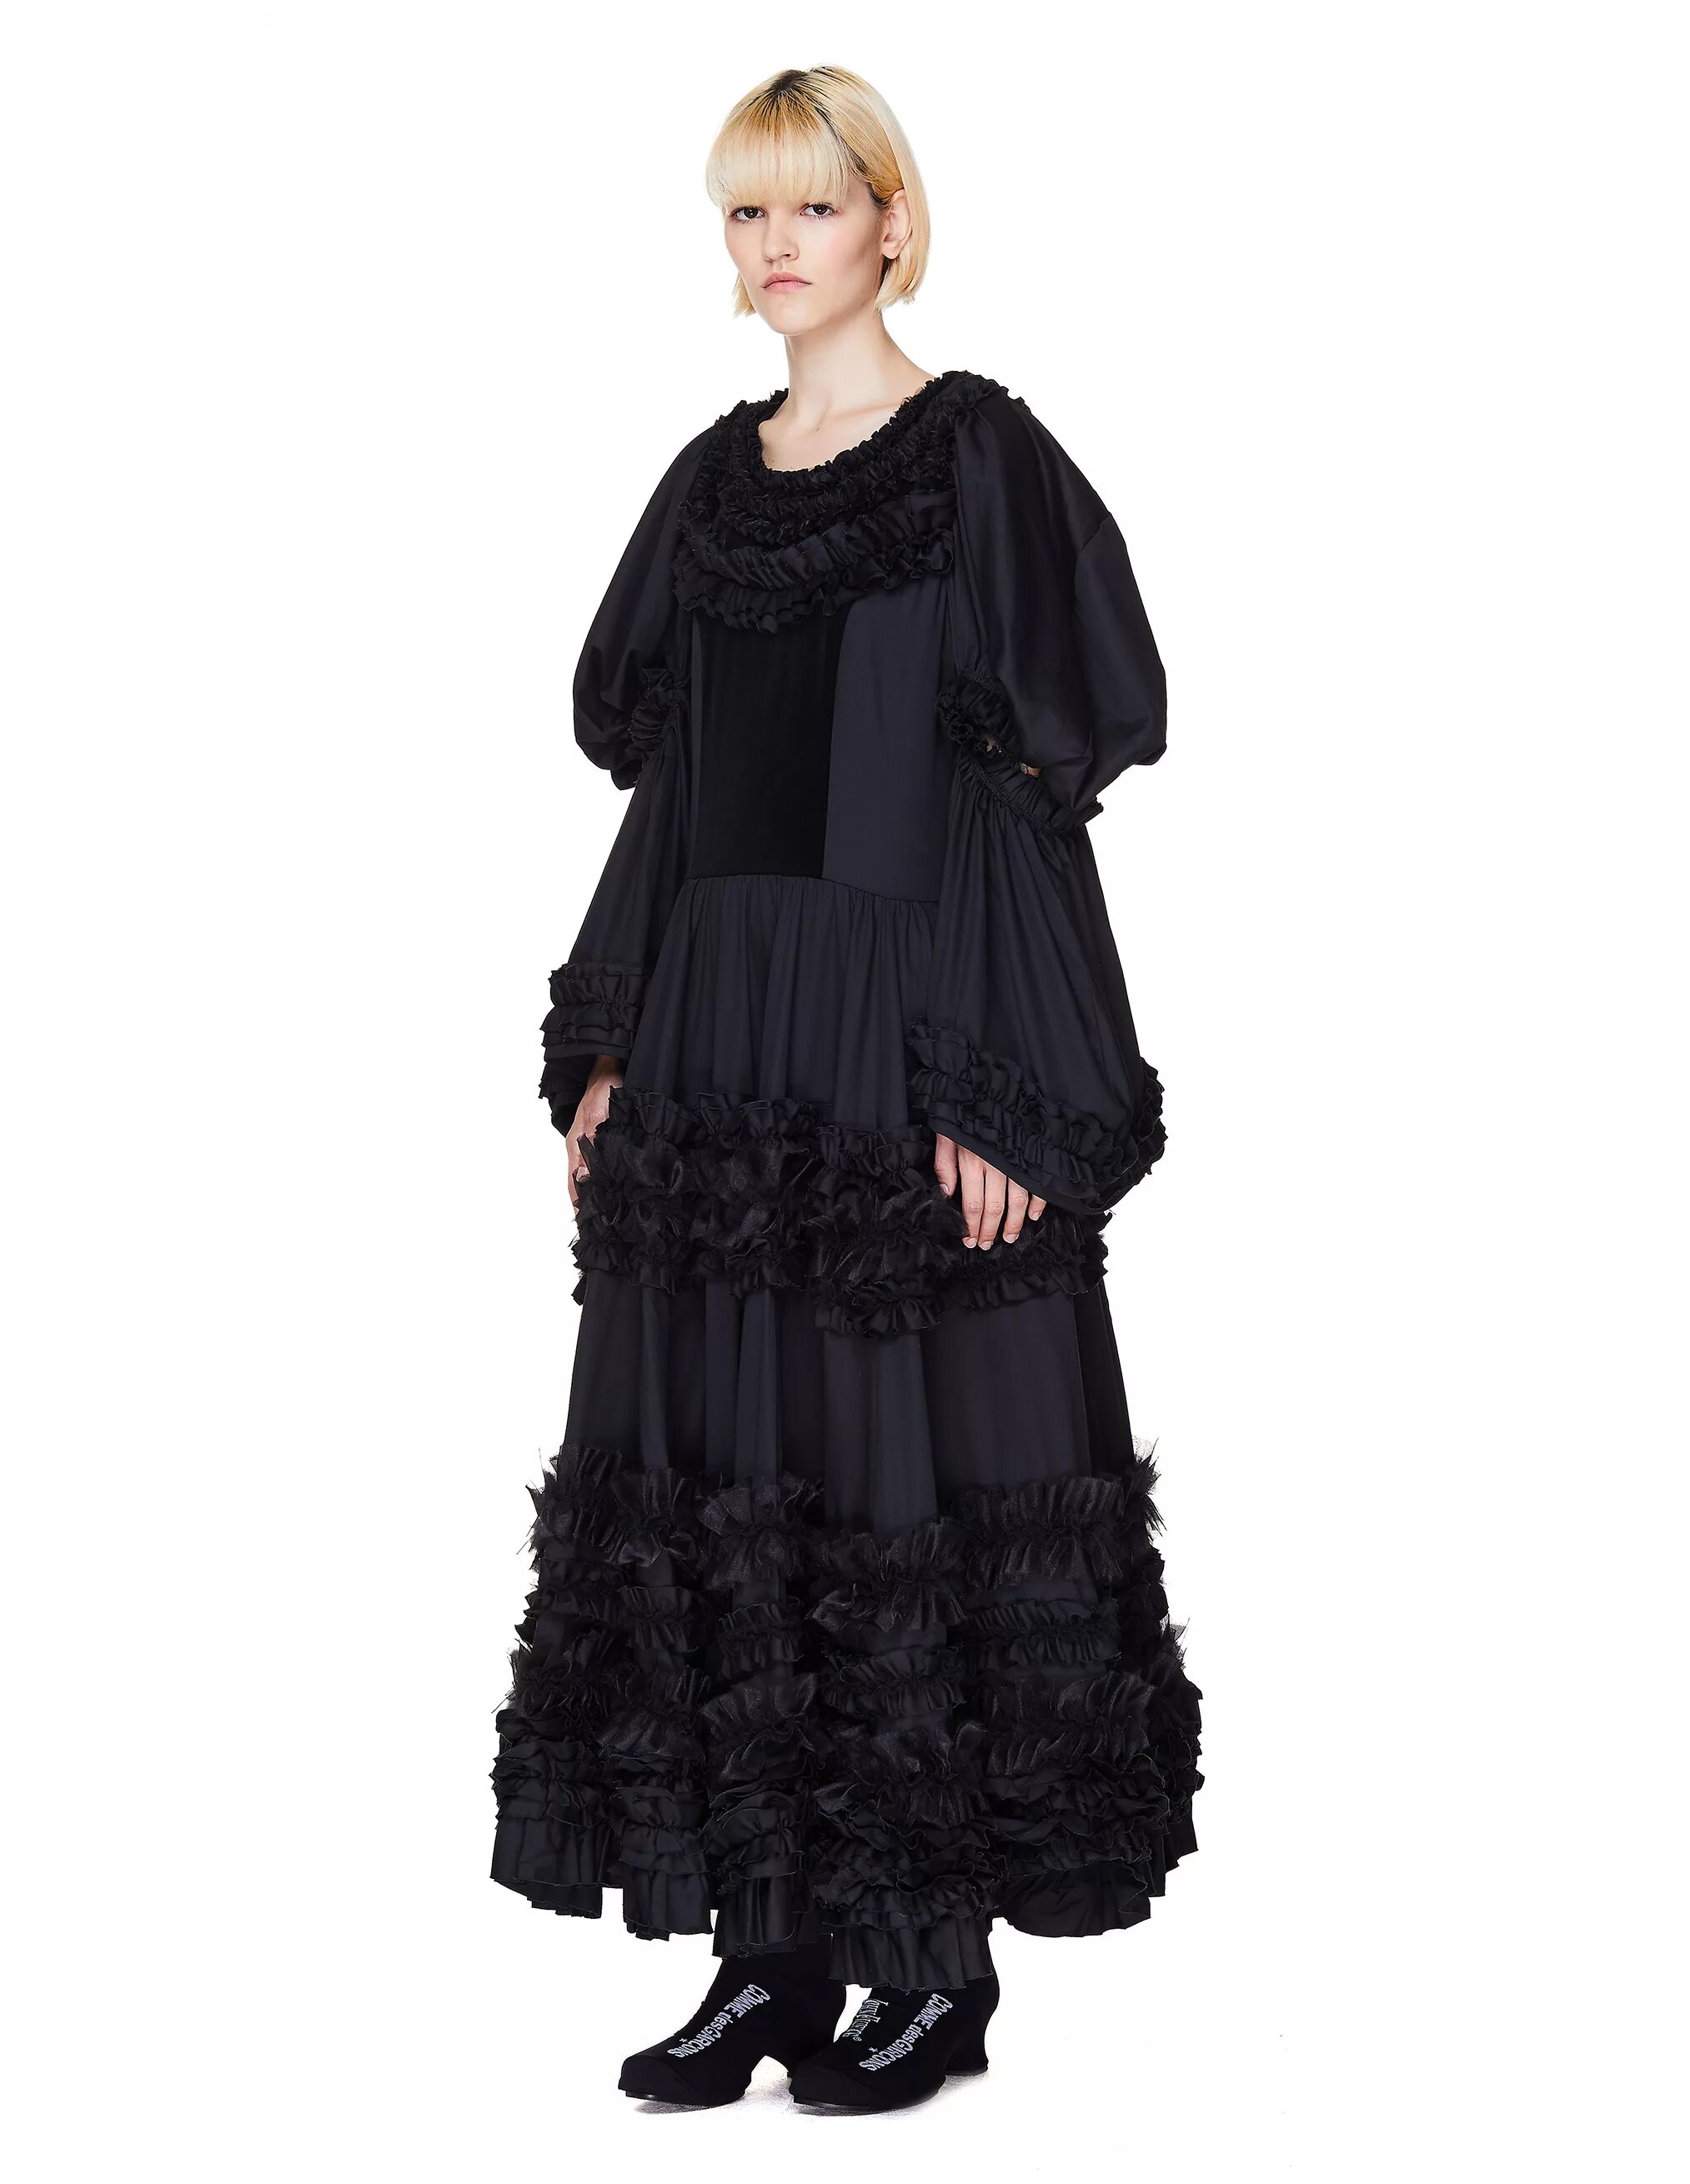 Черное платье comme des garcons. Черное платье с рюшами. Вечернее платье черное с рюшами внизу. Платья чёрное.в цветочек с рюшами.